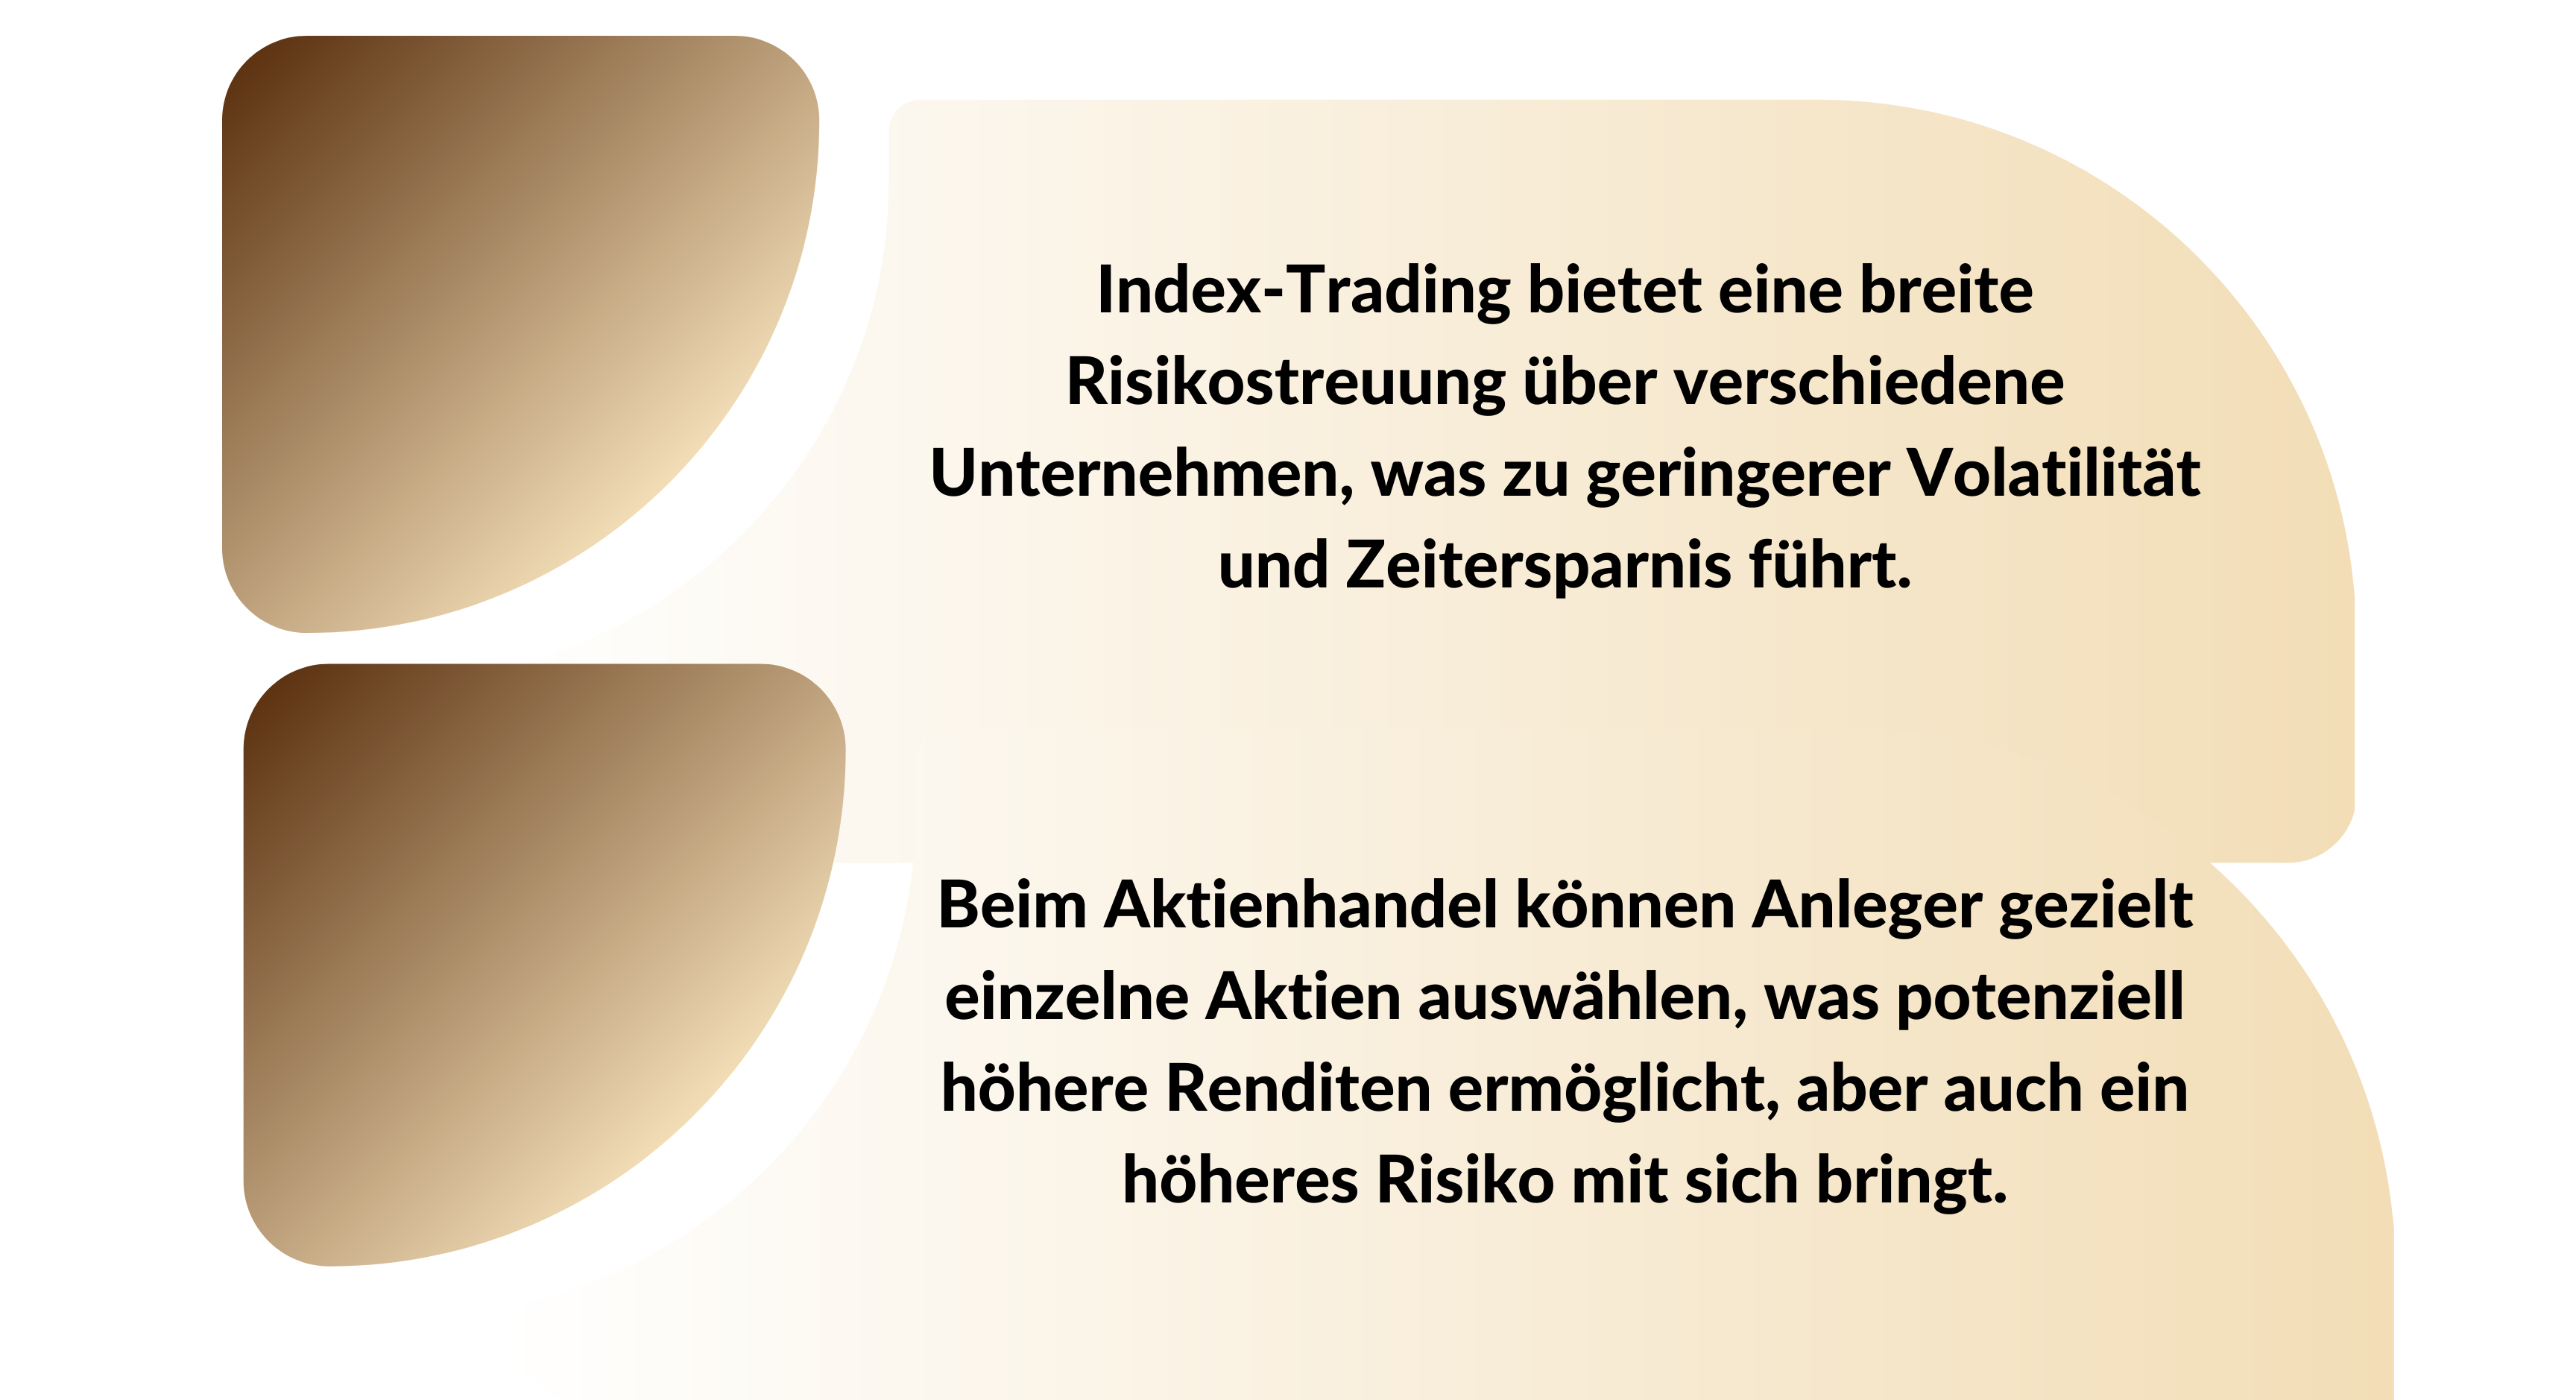 Index-Trading vs. Aktienhandel